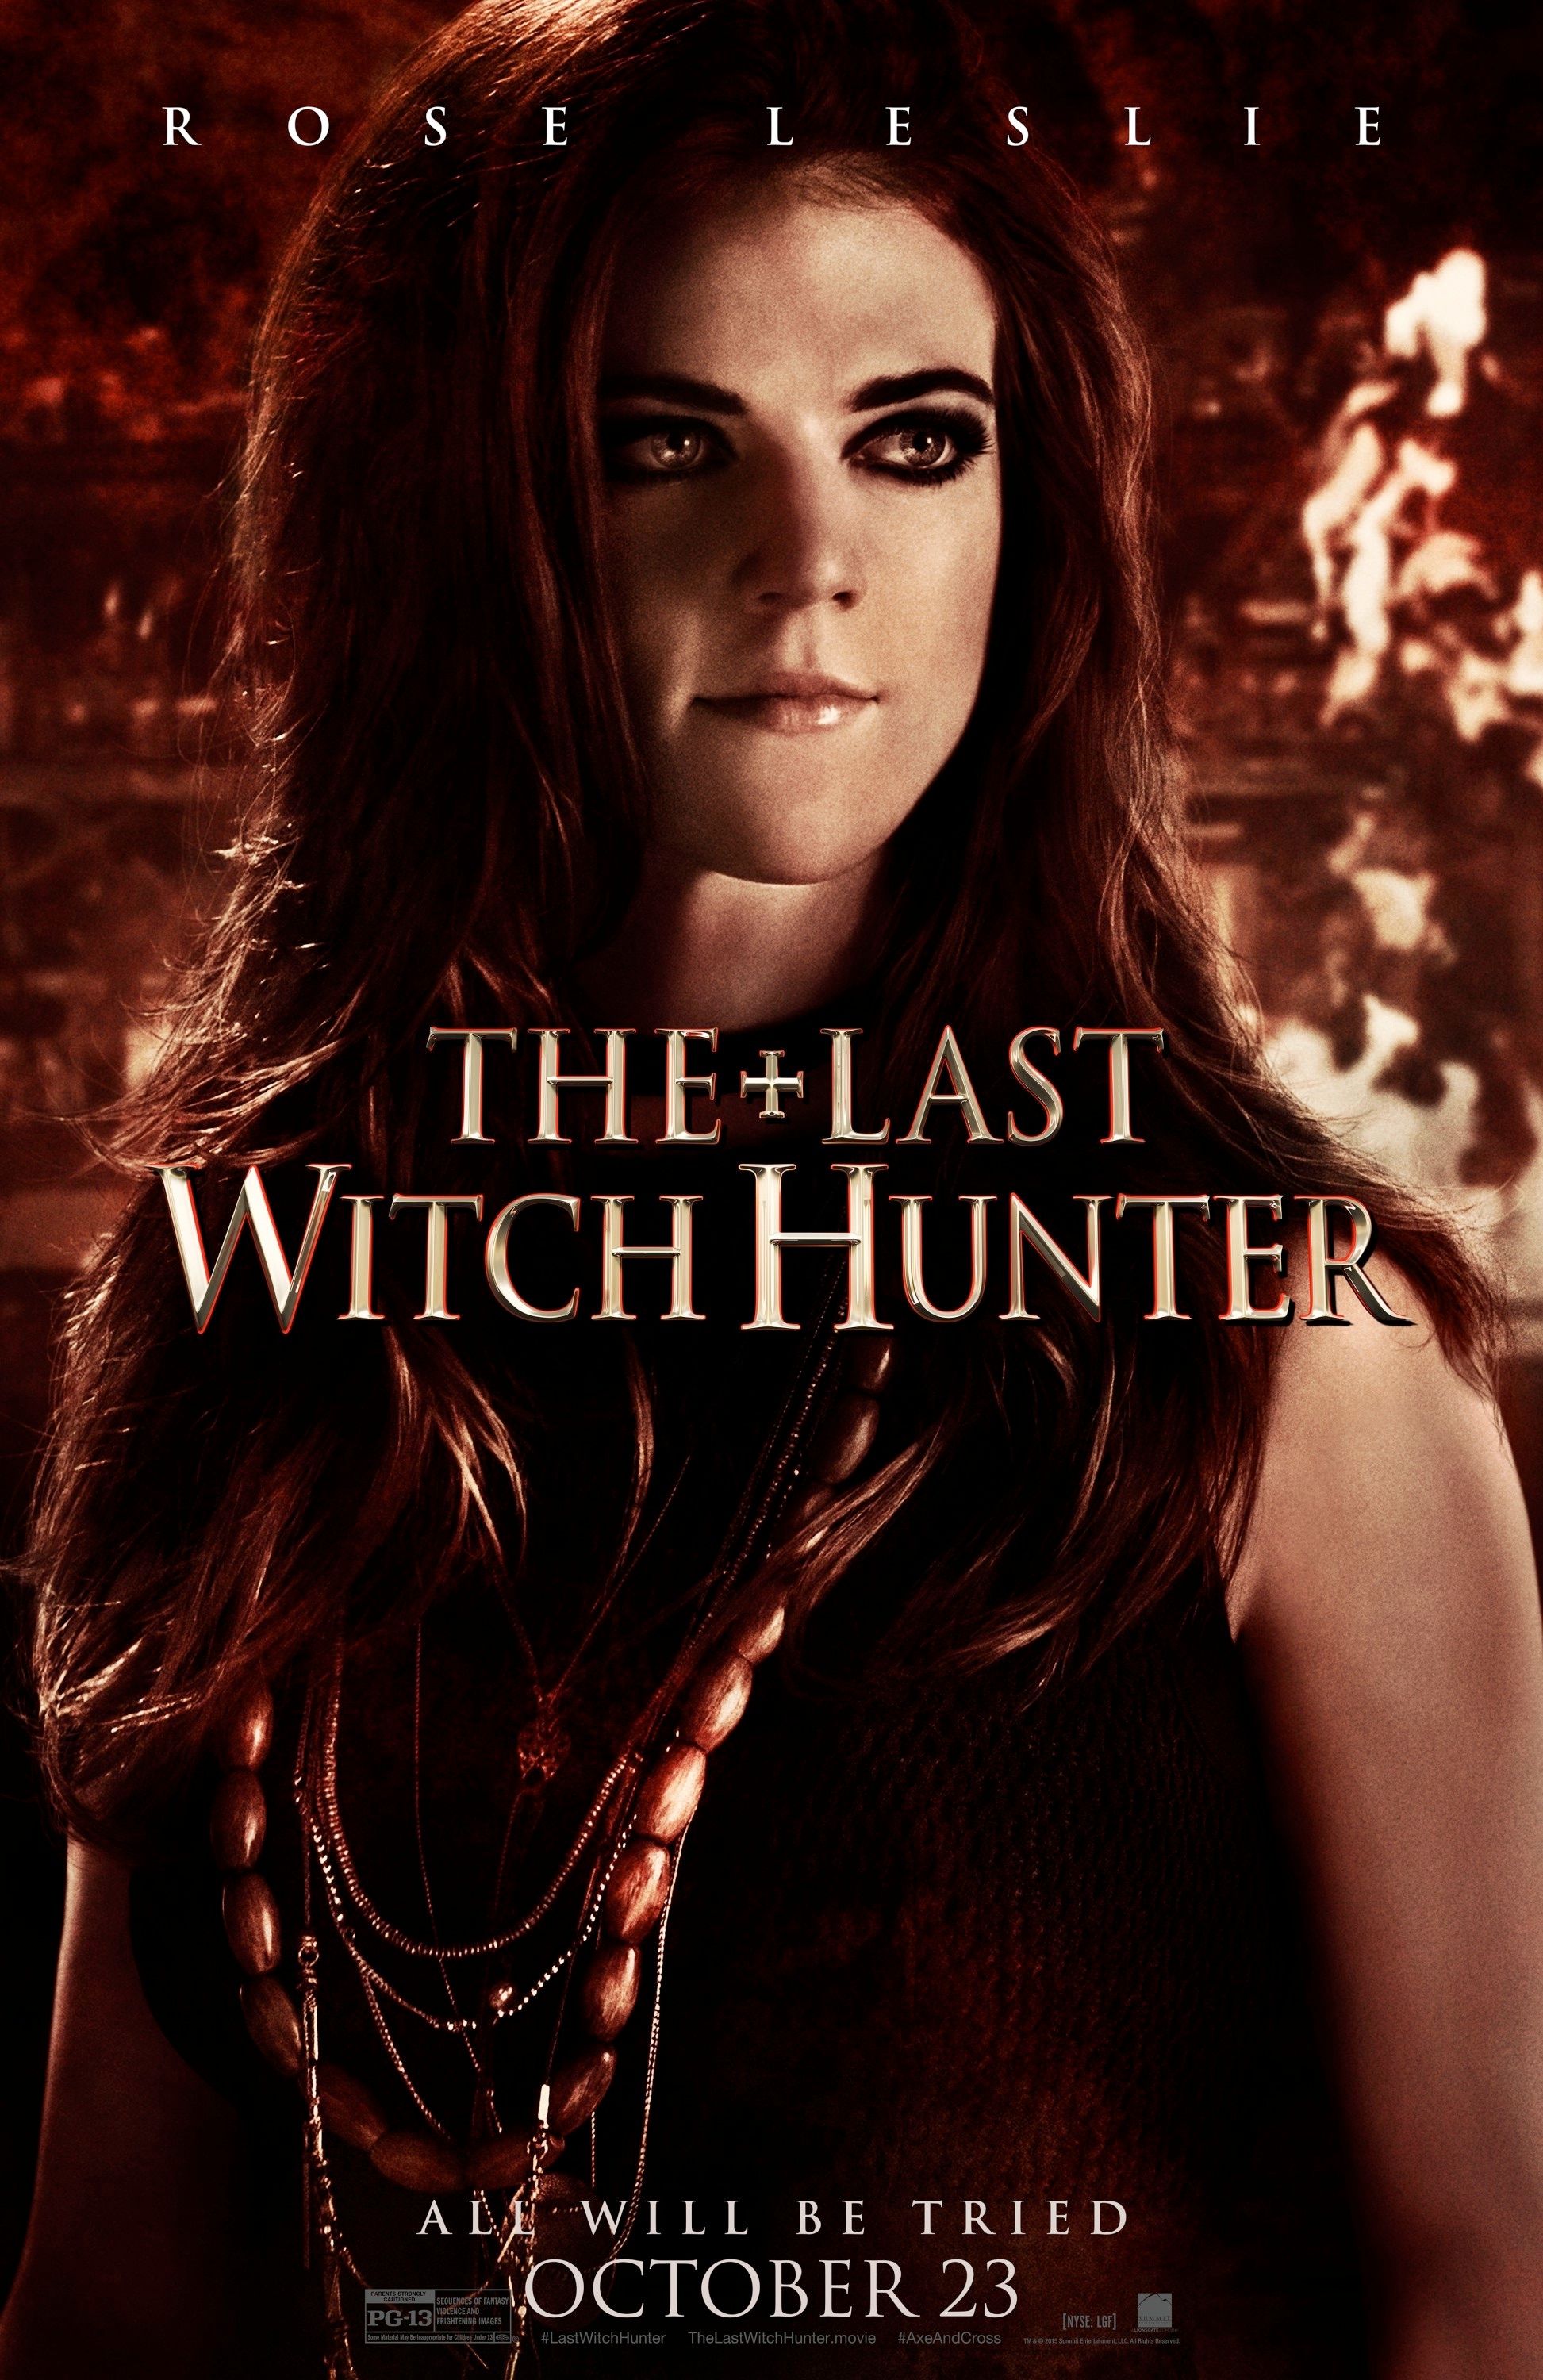 Rose Leslie Last Witch Hunter Poster